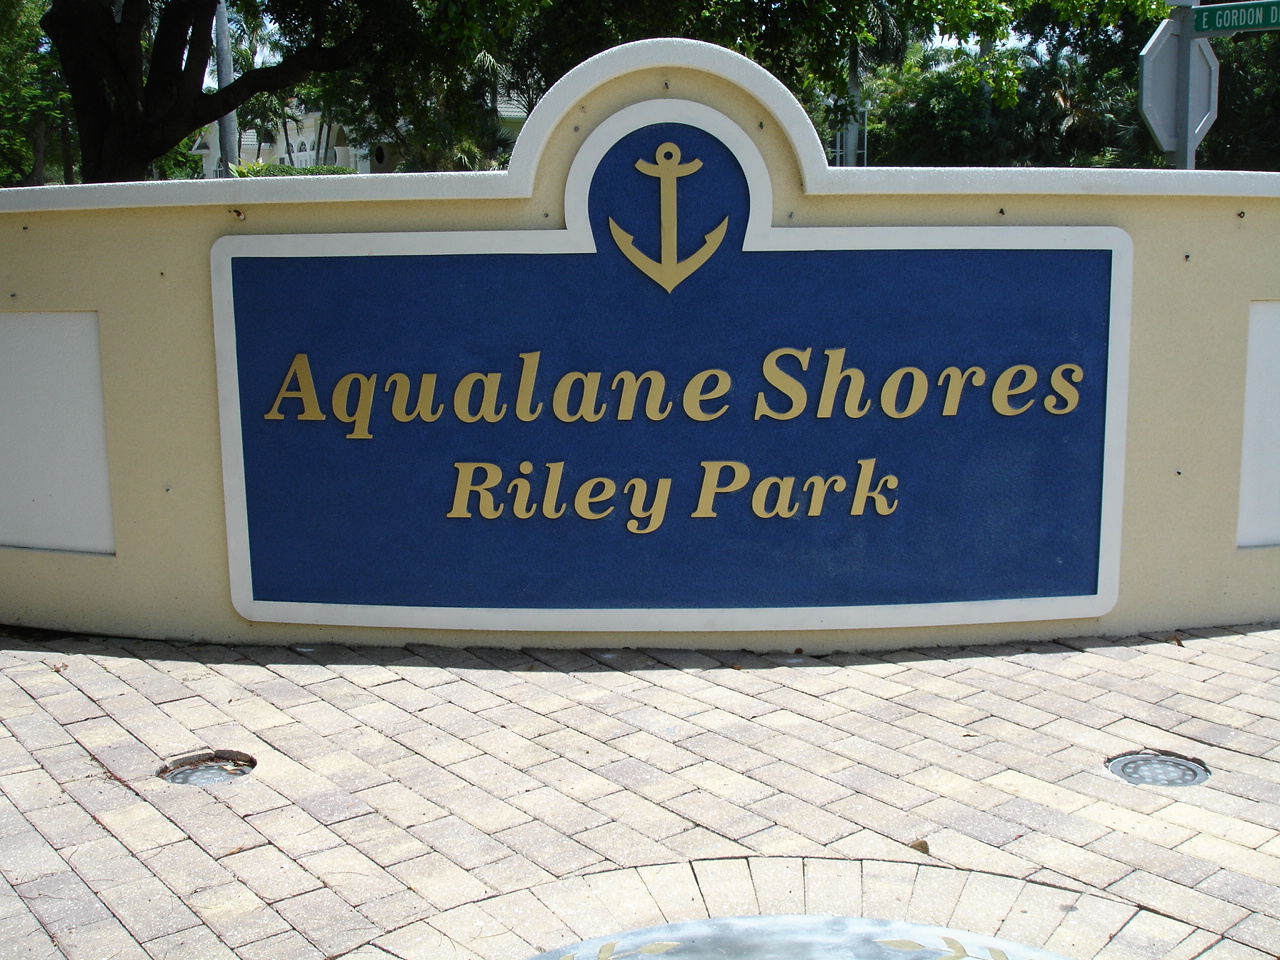 AQUALANE SHORES Riley Park Signage